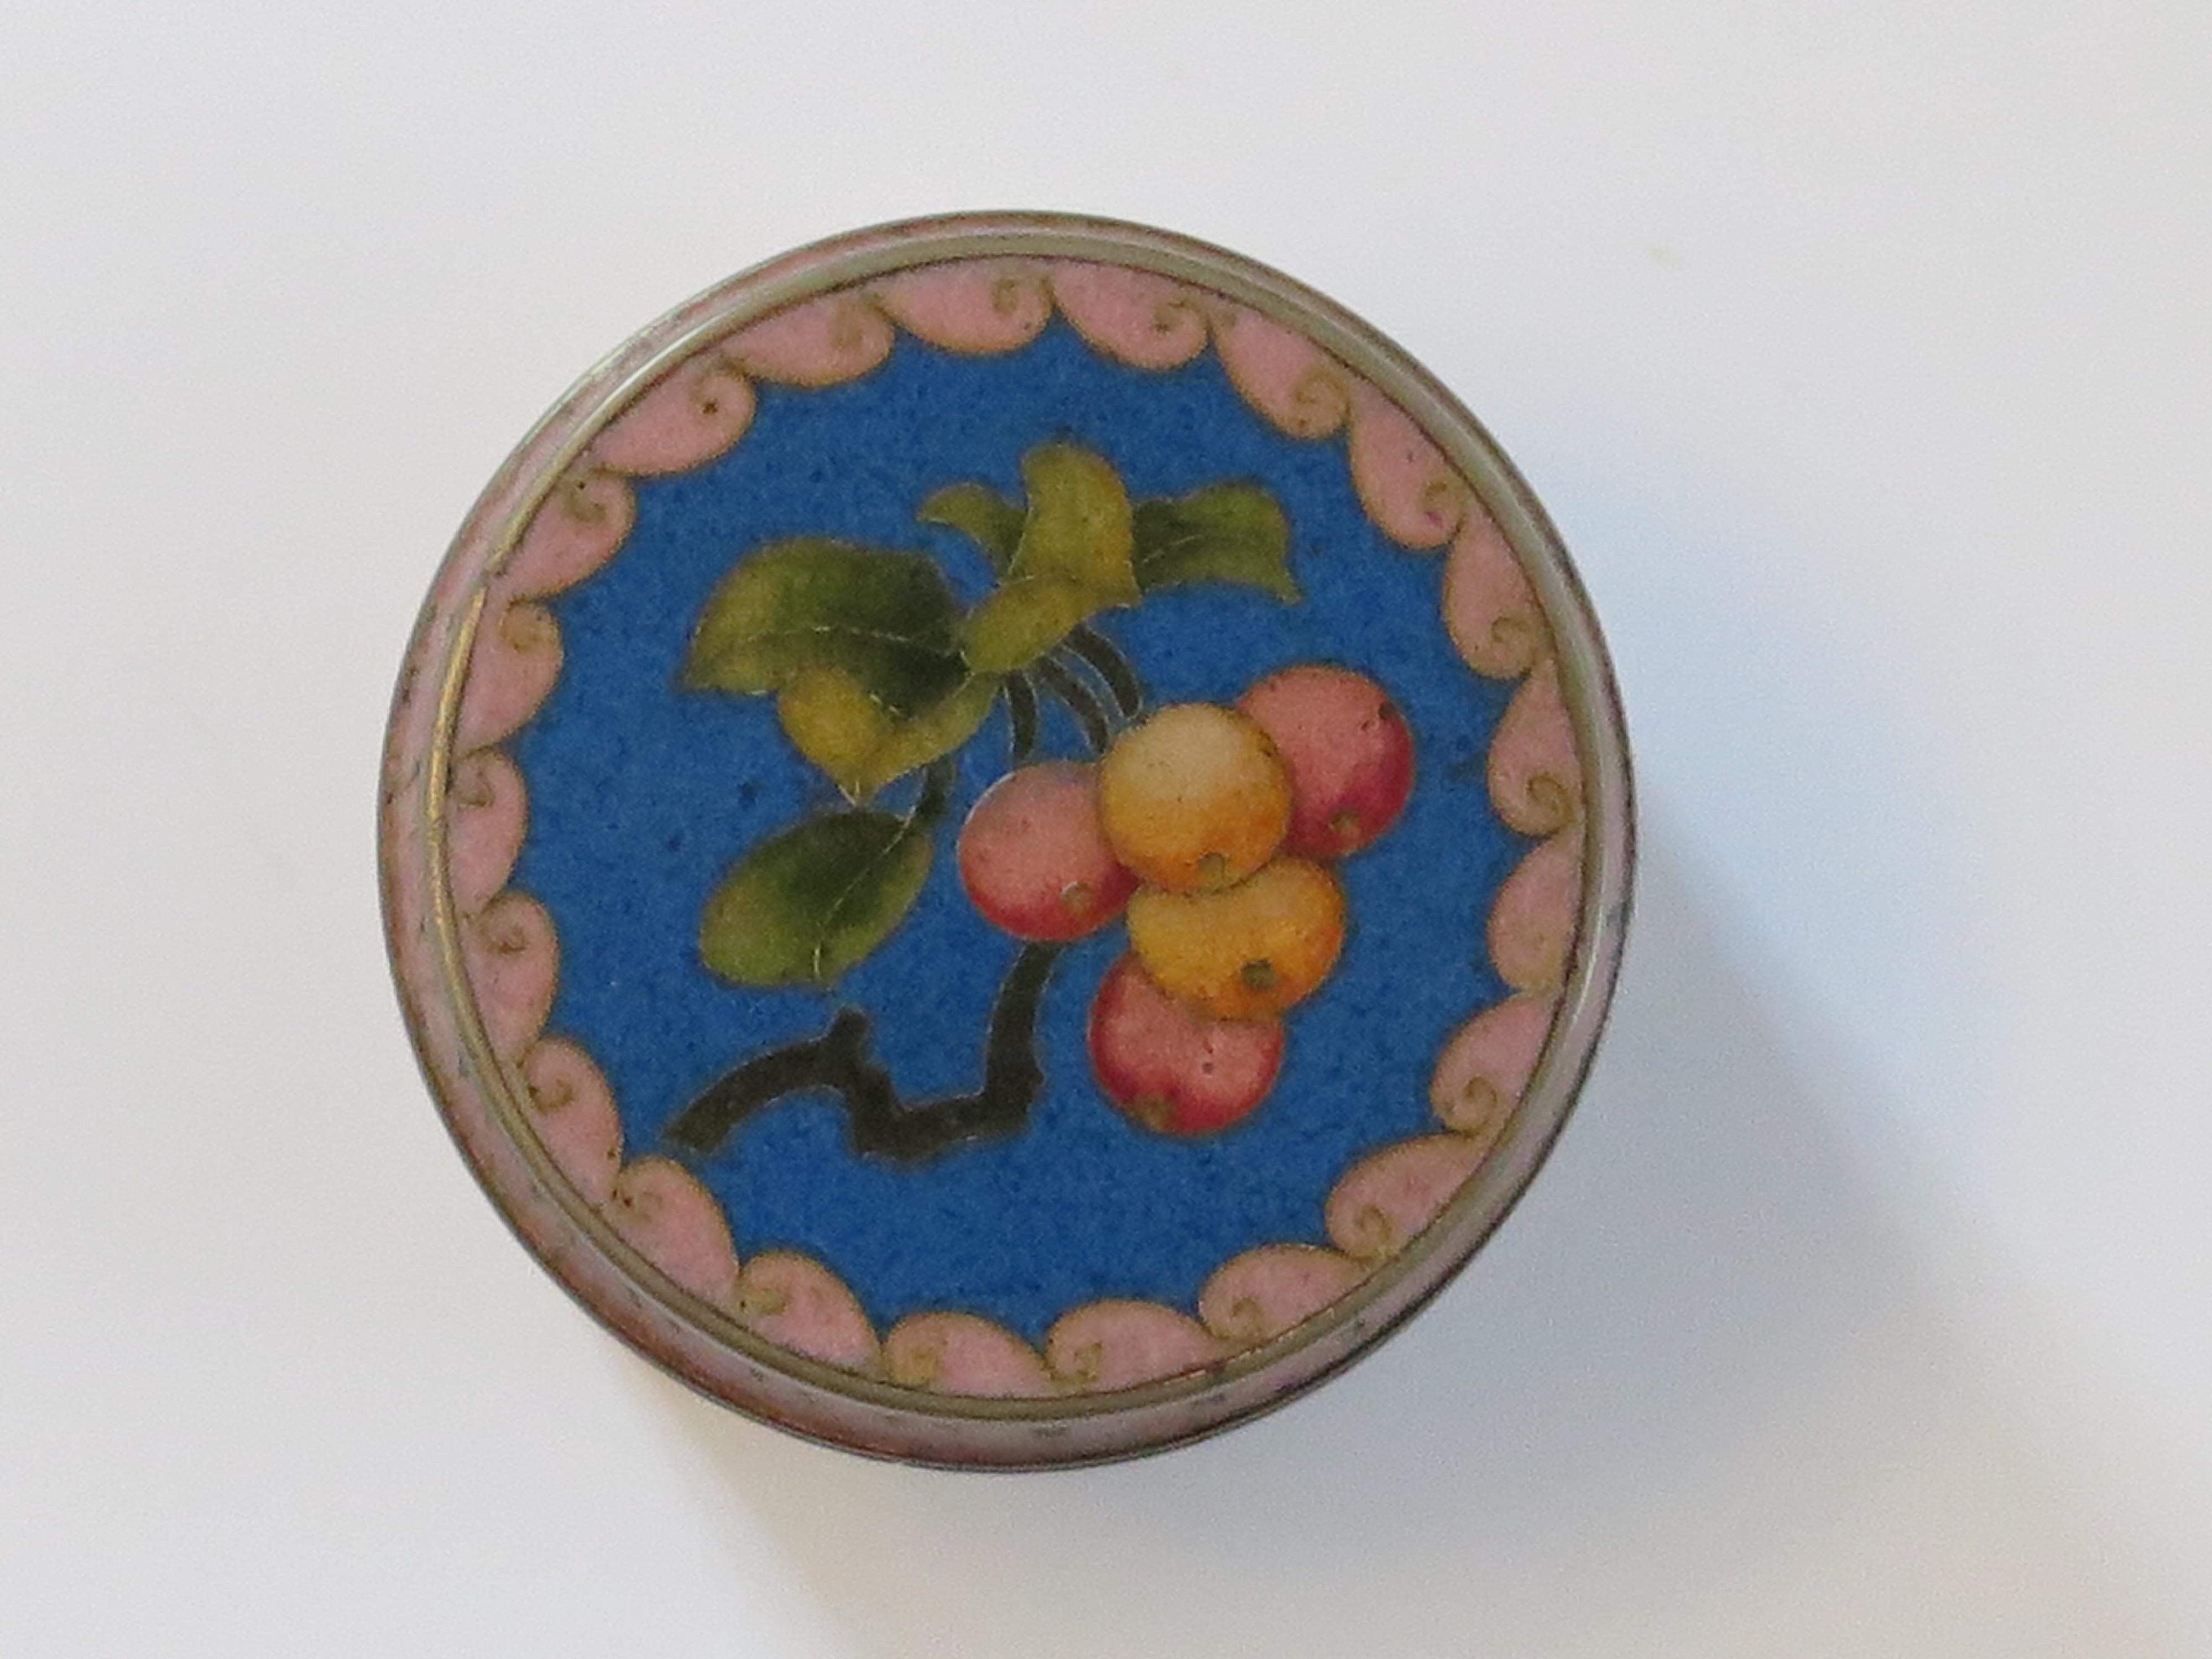 Il s'agit d'une boîte à couvercle cloisonnée chinoise très décorative que nous datons du 20e siècle, vers 1930.

La boîte, de forme cylindrique, avec son couvercle d'origine, est magnifiquement réalisée avec des émaux colorés sur fond bleu. 

La